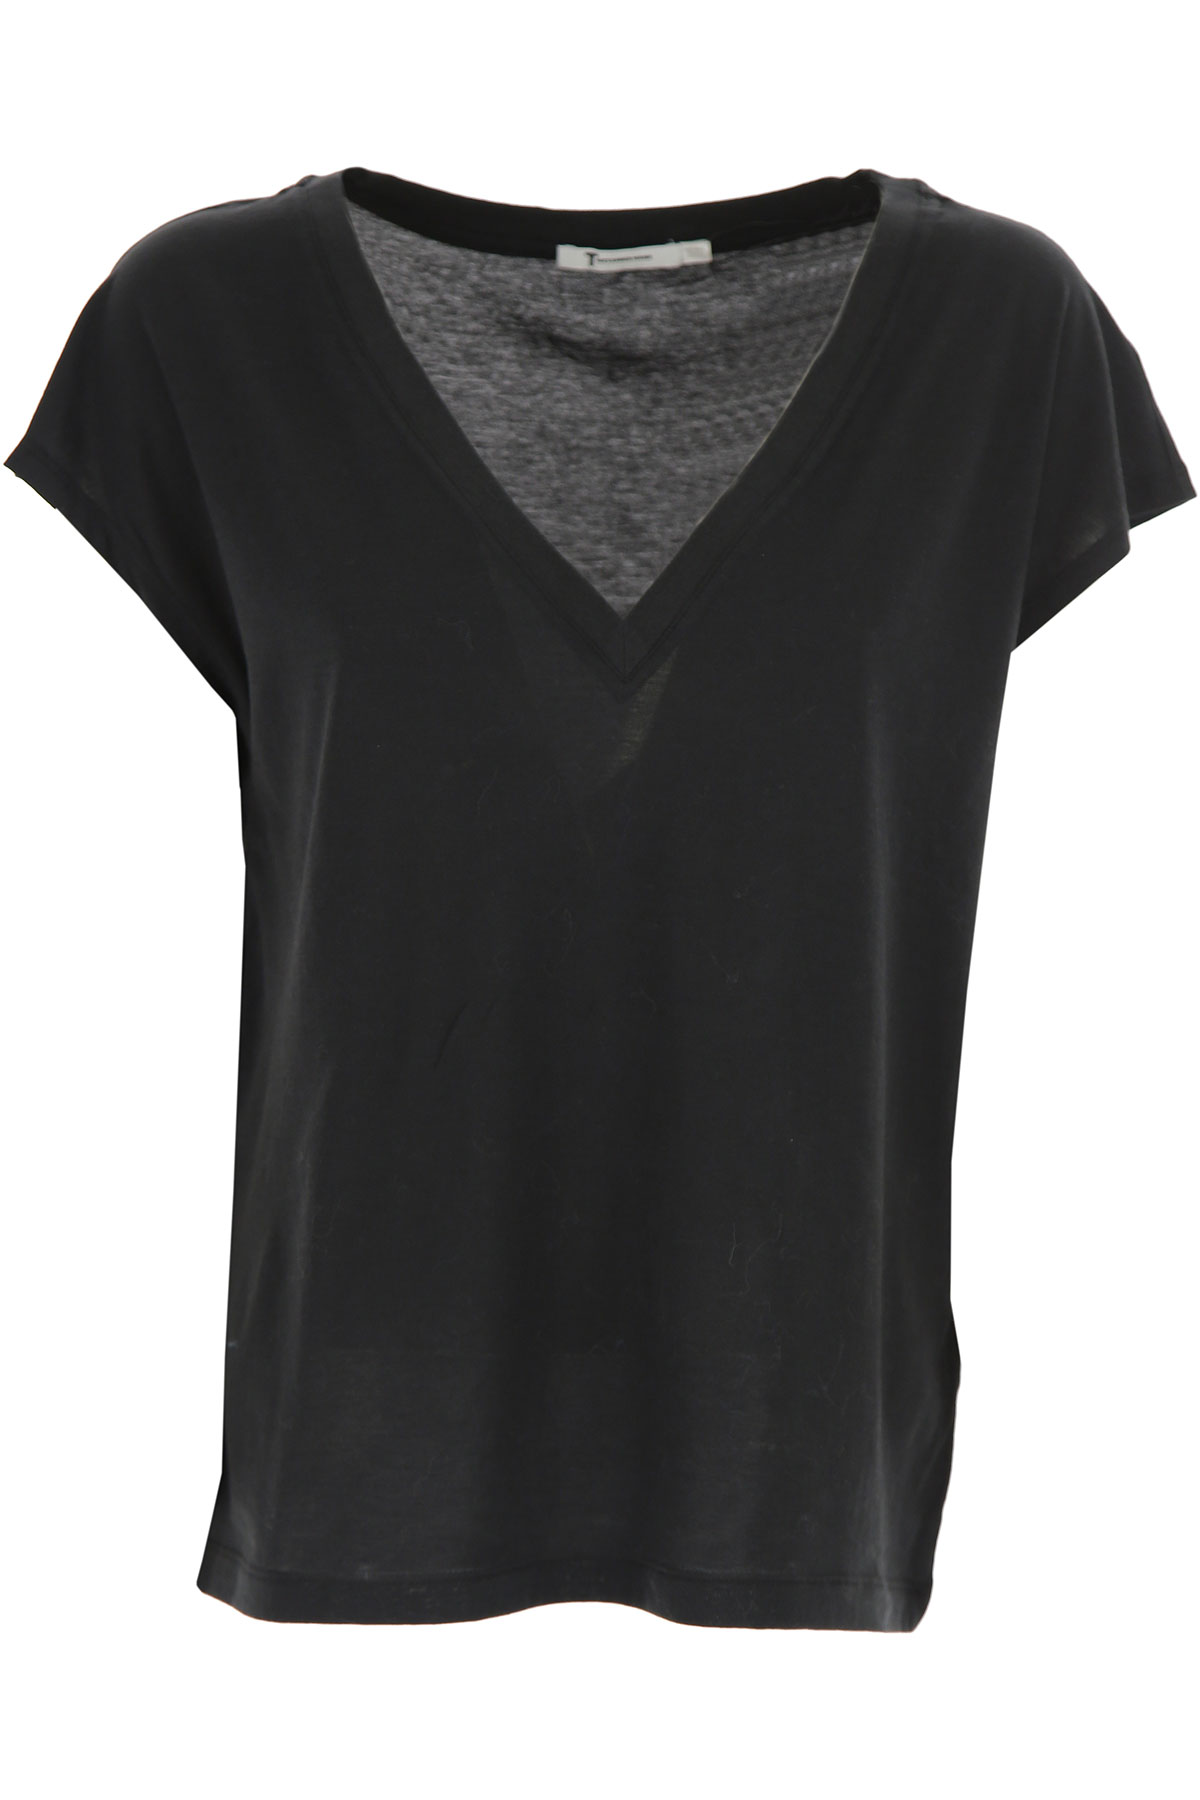 Alexander Wang T-shirt Femme, Noir, Coton, 2017, 38 40 42